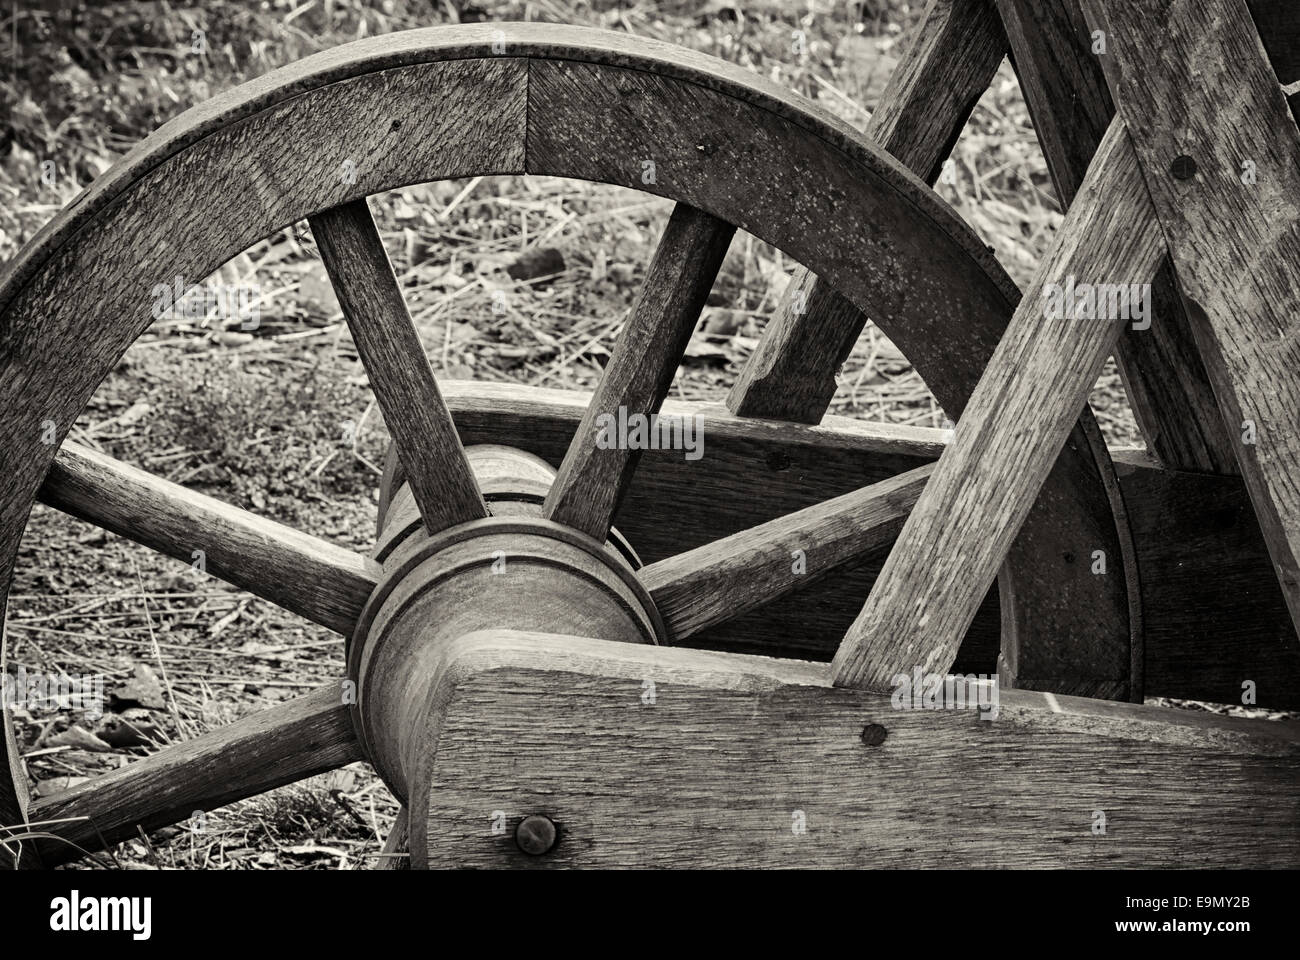 Old wooden wheelbarrow Stock Photo